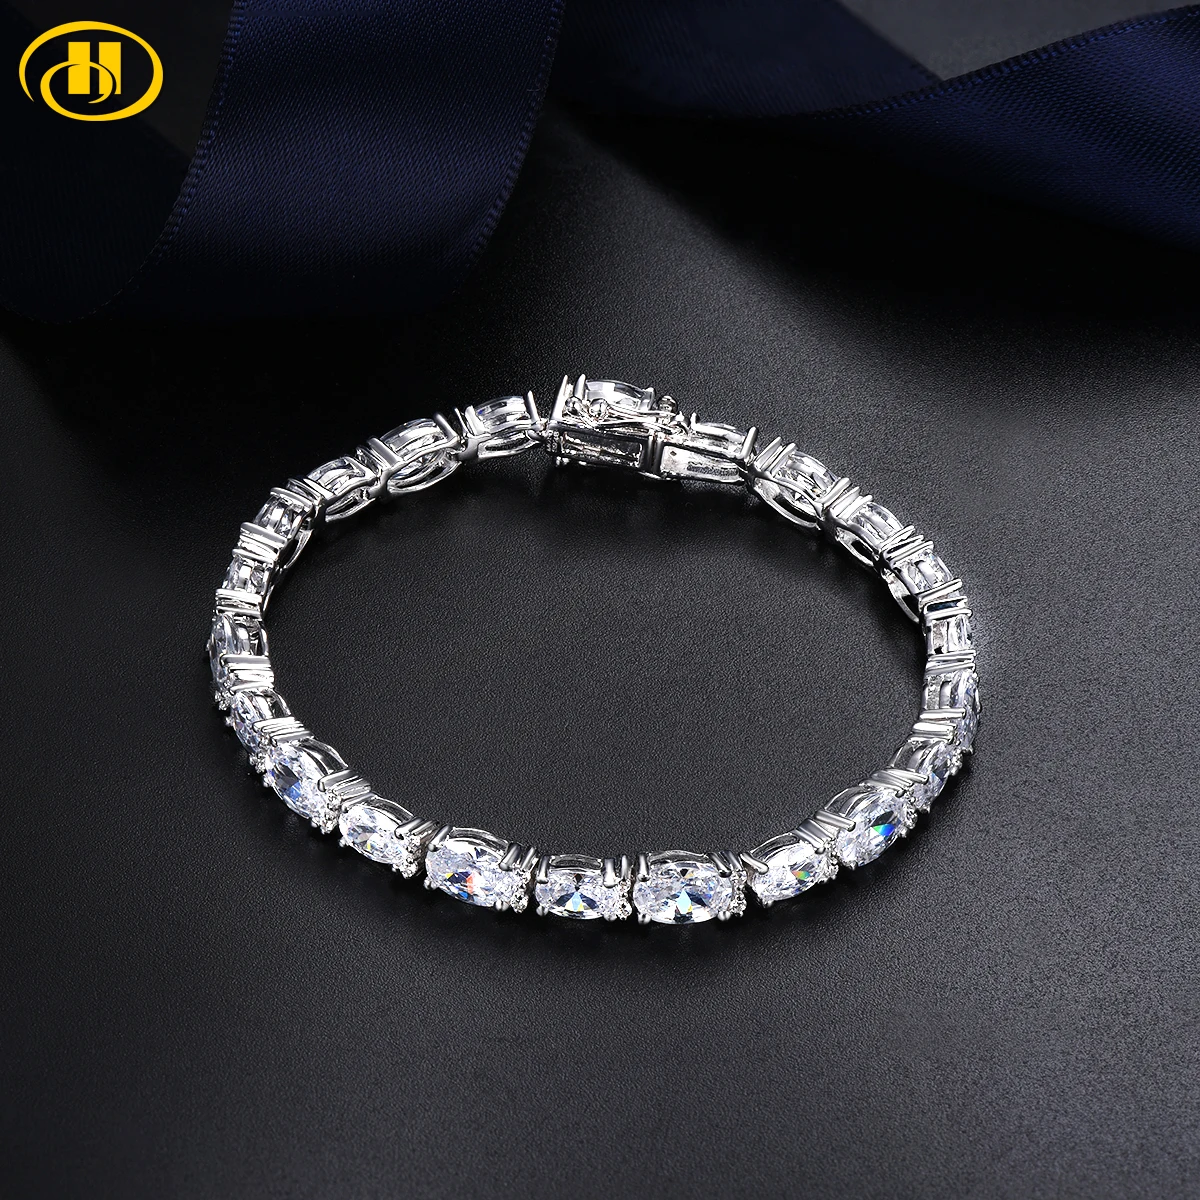 Stock Clearance 100% Genuine 925 Sterling Silver Bracelet AAAAA White Cubic Zirconia Fine Jewelry for Bracelets Luxury Style